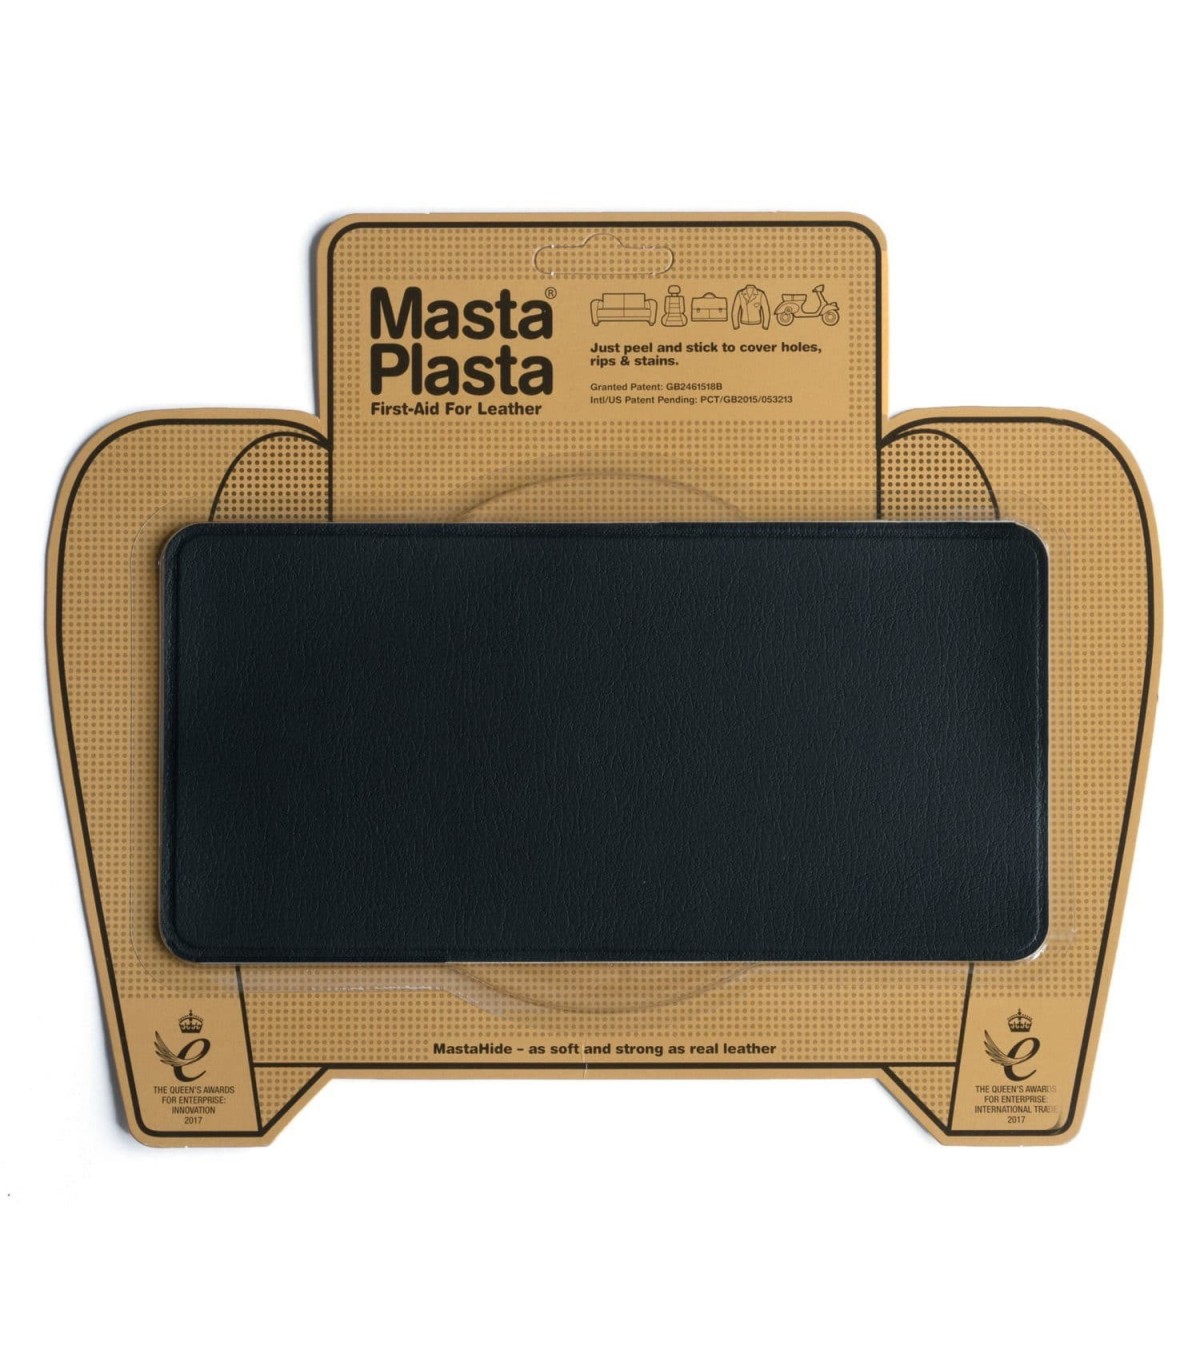 MastaPlasta Cinta autoadhesiva para reparación de cuero, color beige, 59.1  x 3.9 in, tapicería instantánea y reparación de arañazos en un rollo para